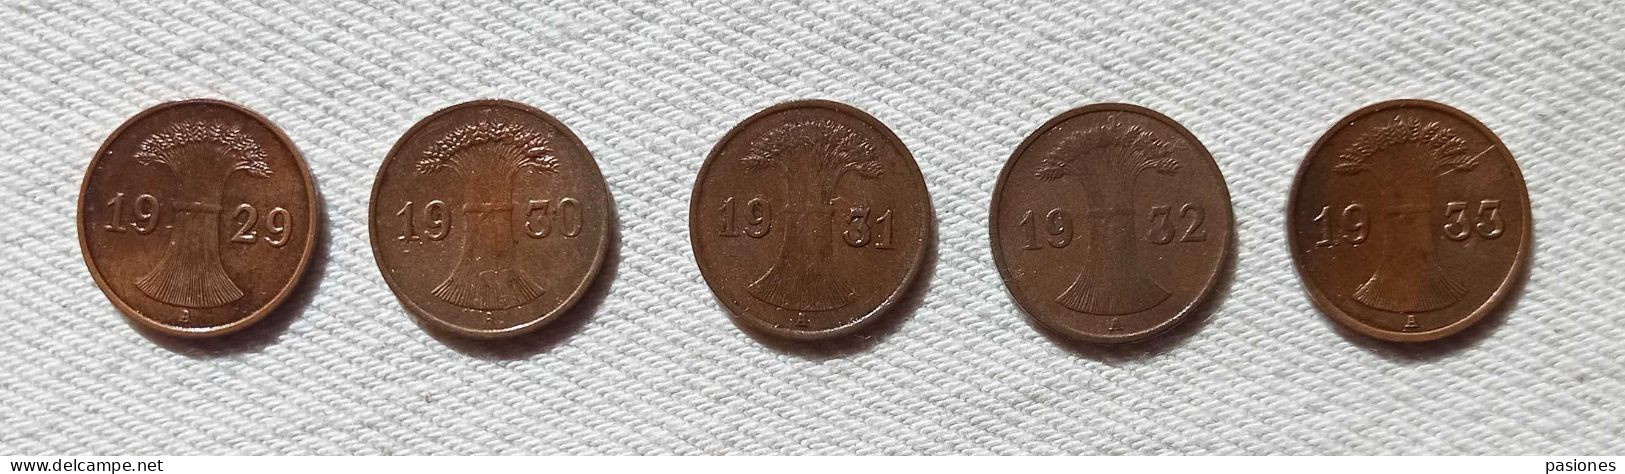 Germania Weimar  1 Reichspfennig 1929A-1930A-1931A-1932A-933A  Lotto Di 5 Monete - 1 Renten- & 1 Reichspfennig